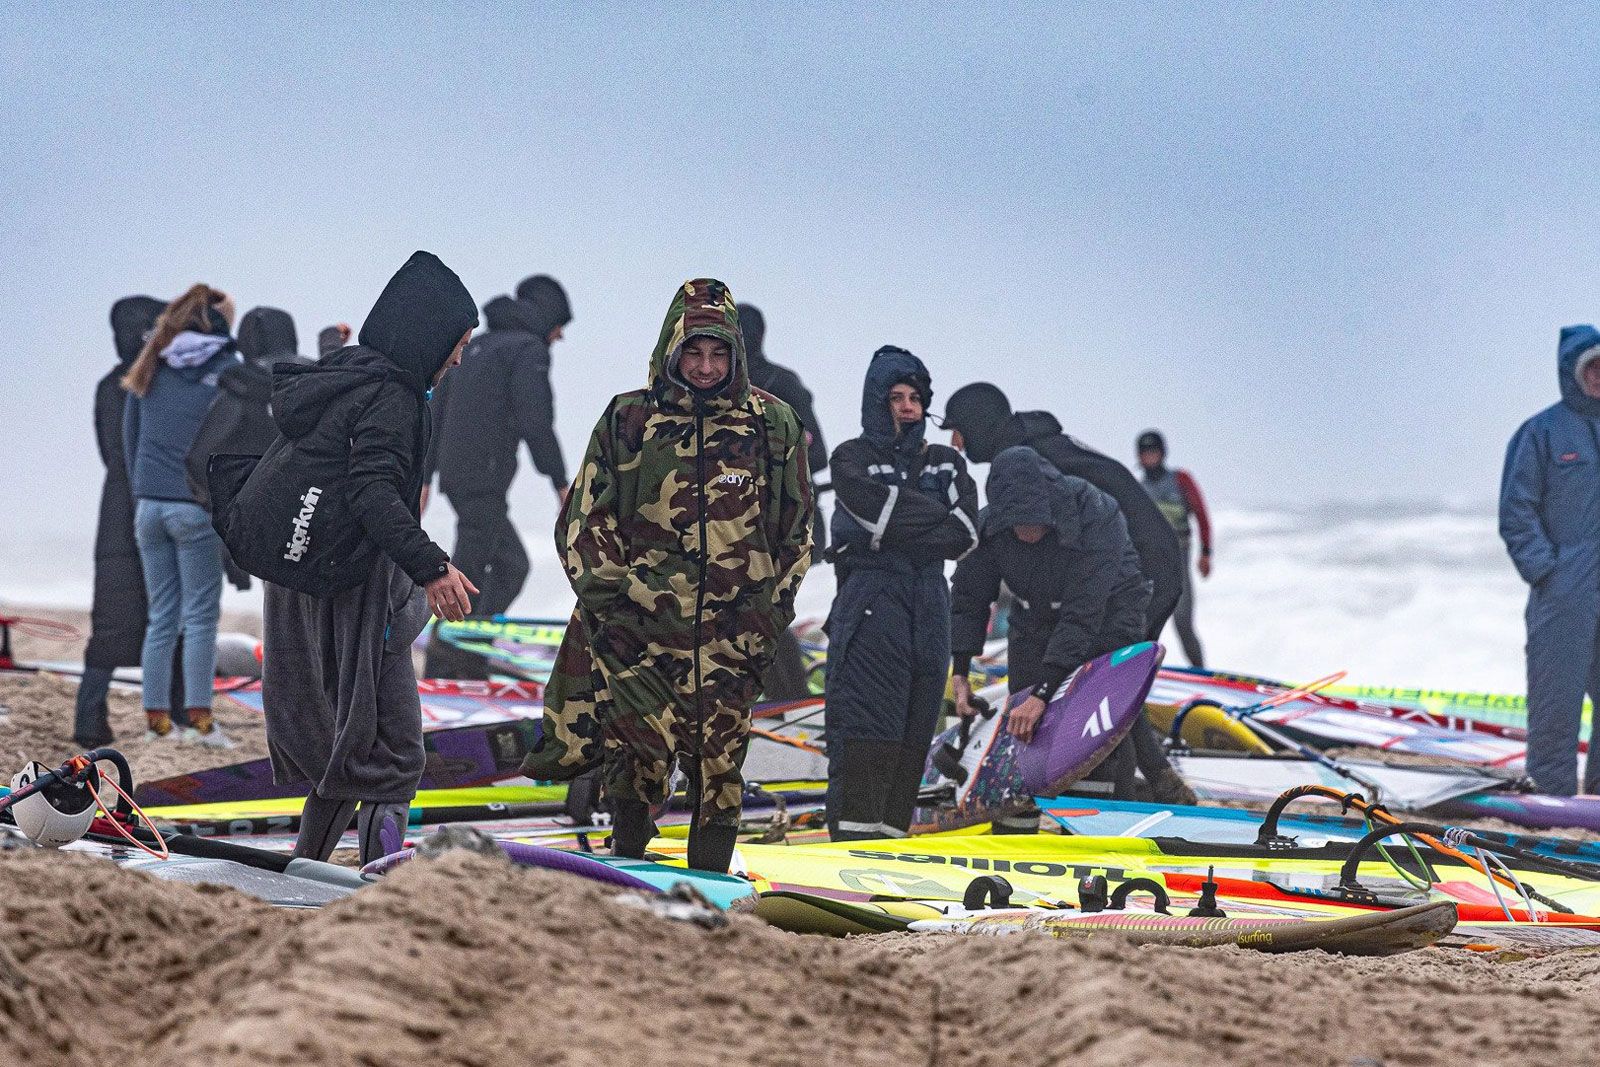 Danish Open Klitmller 2021: Wave- und Freestyle-Windsurfcontest in Cold Hawaii 